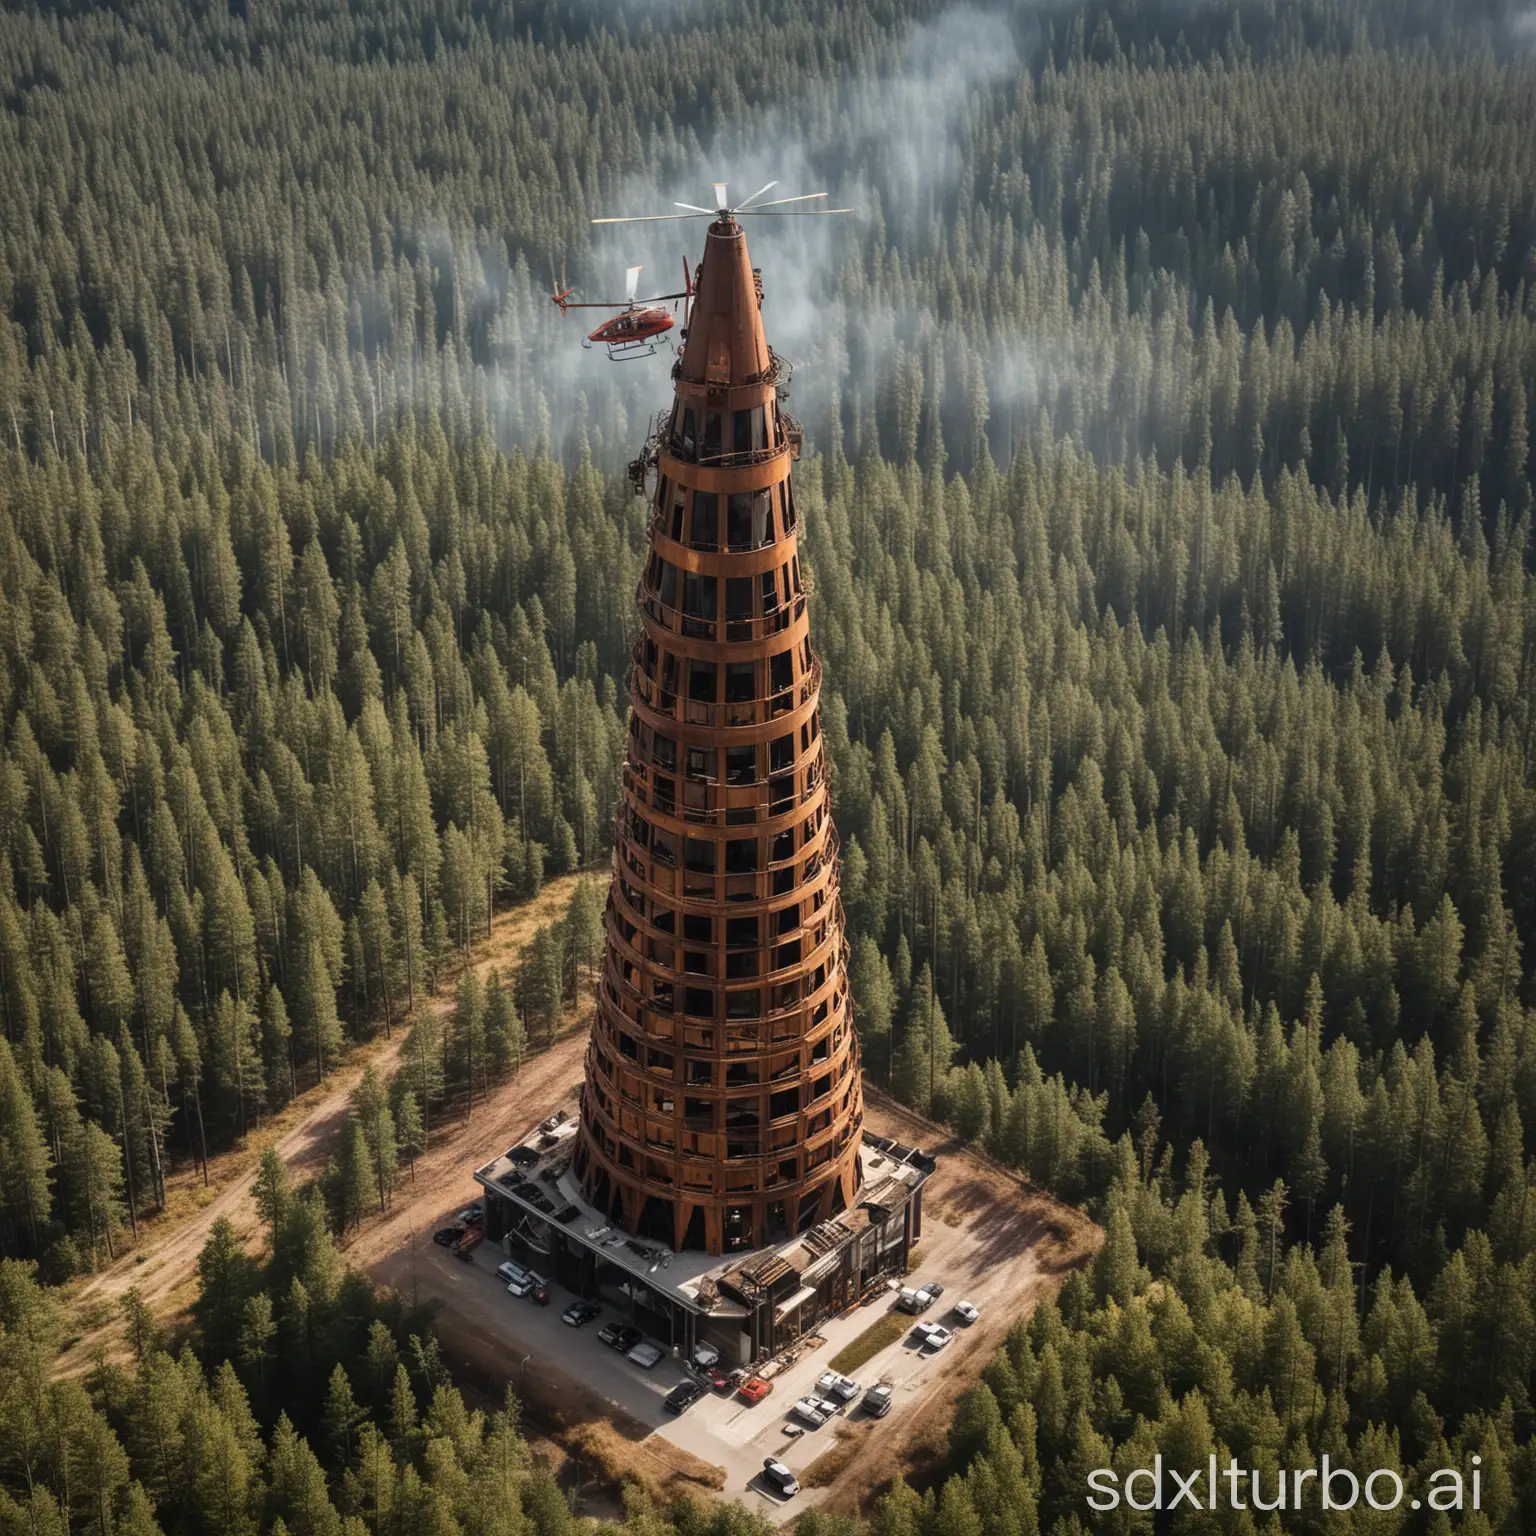 Rusted-Metal-Skyscraper-in-Forest-Helipad-Bushfire-Mood